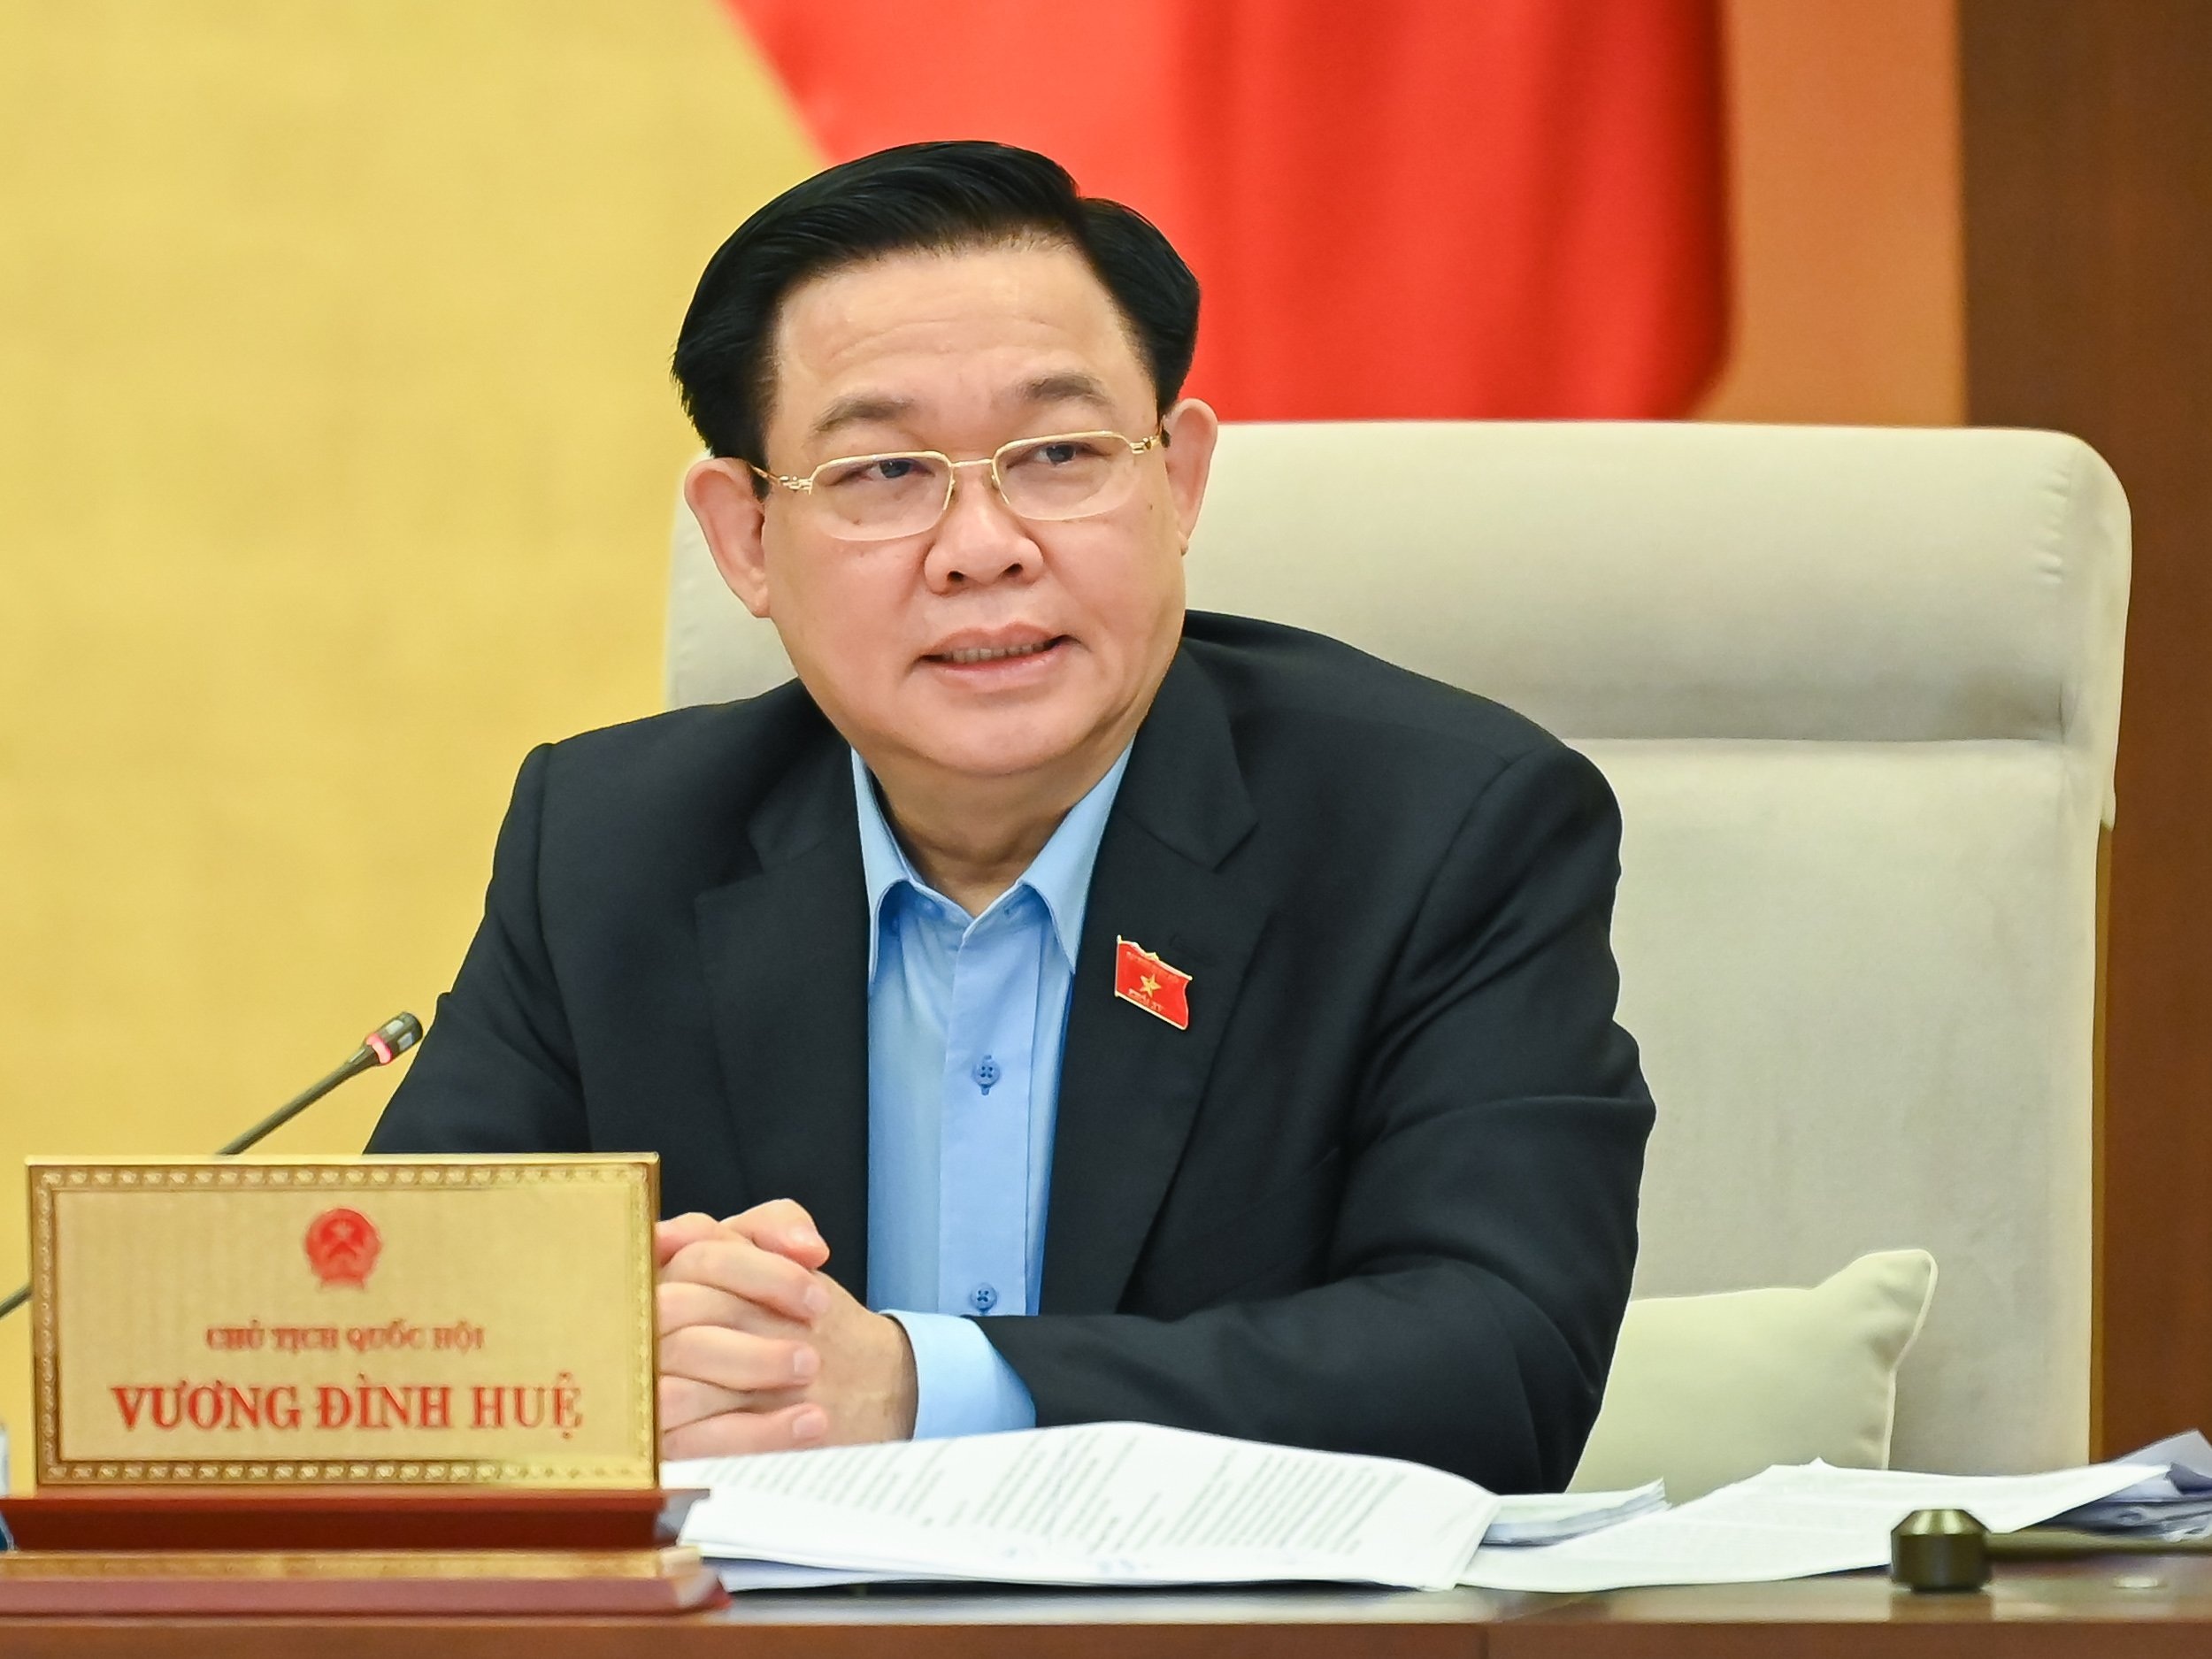 Chủ tịch Hà Nội: Sao có chuyện lấy cớ nghèo để không thực hiện nghĩa vụ - 1